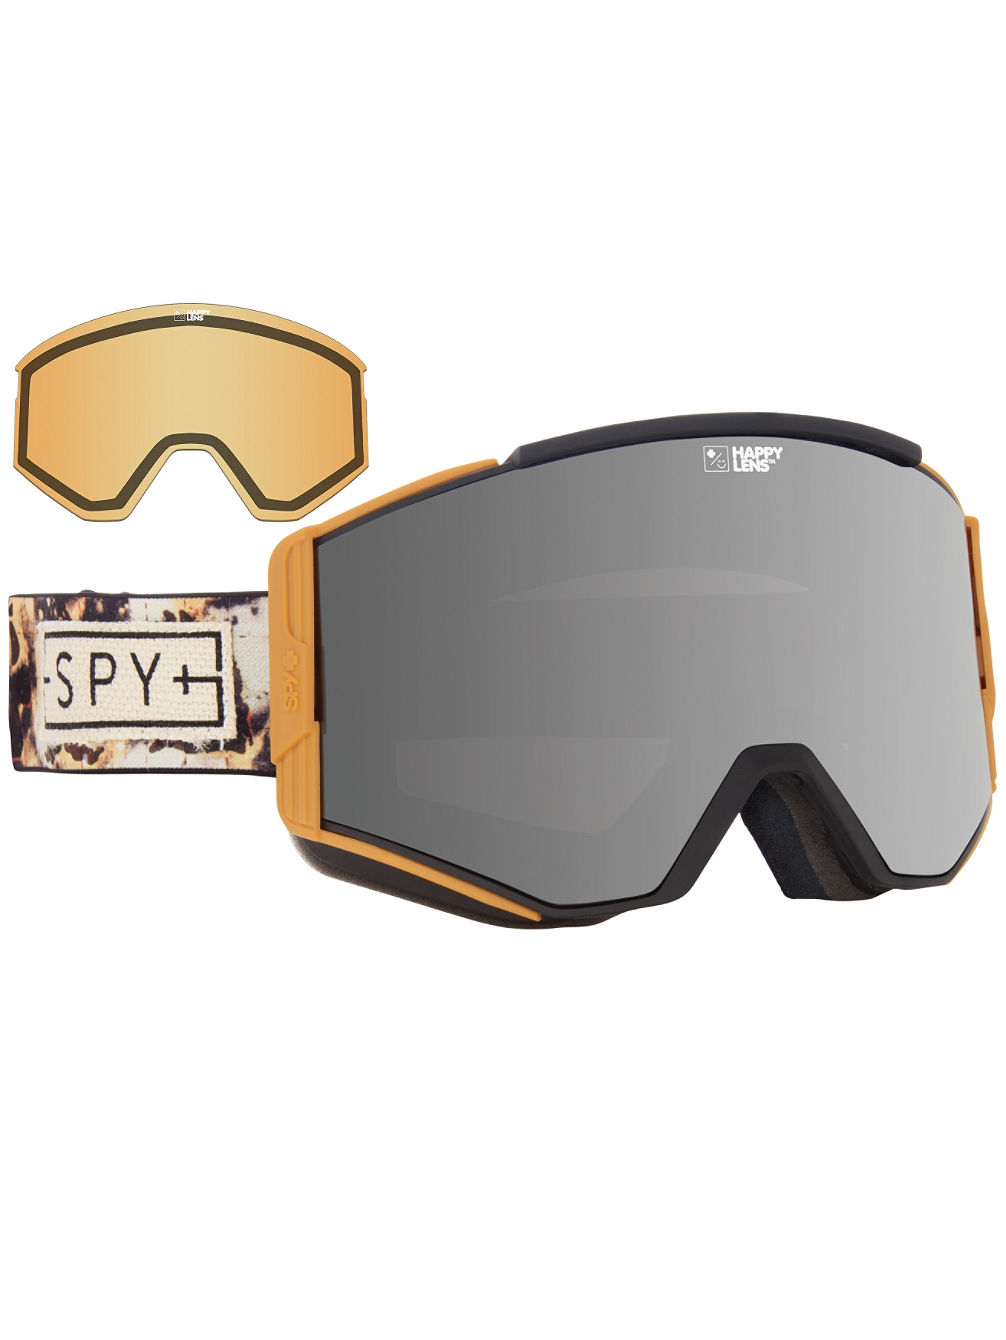 Ace Spy + Phil Casabon (+Bonus Lens) Gafas de Ventisca